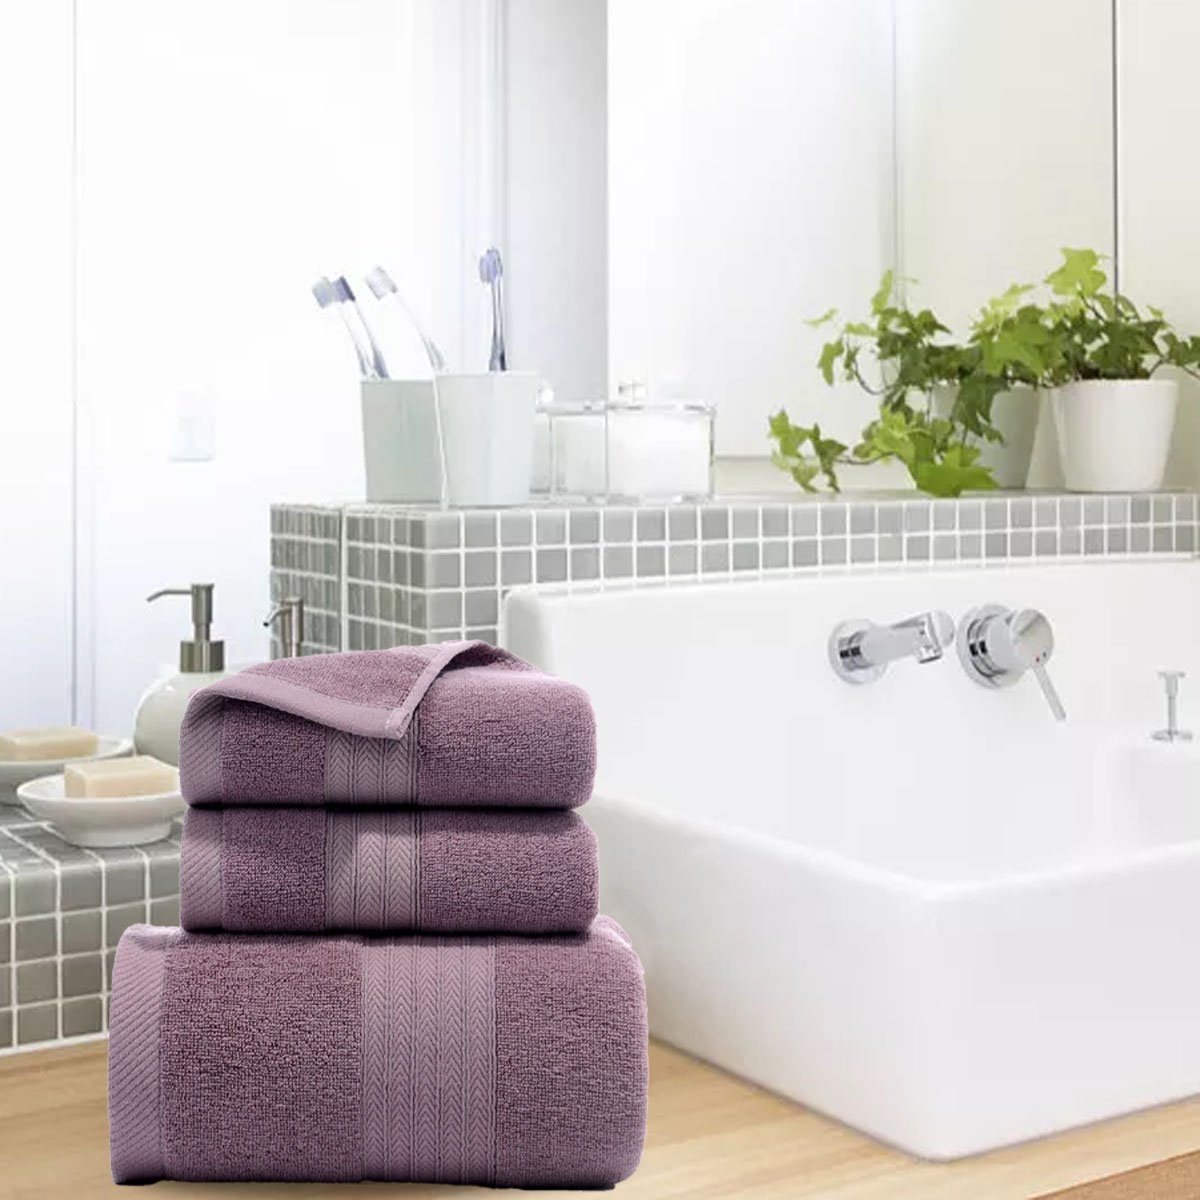 Jormftte Handtücher weich,für Handtuch und Hause zu Set-2xHandtuch,1xBadetuch,saugfähig Violett Set